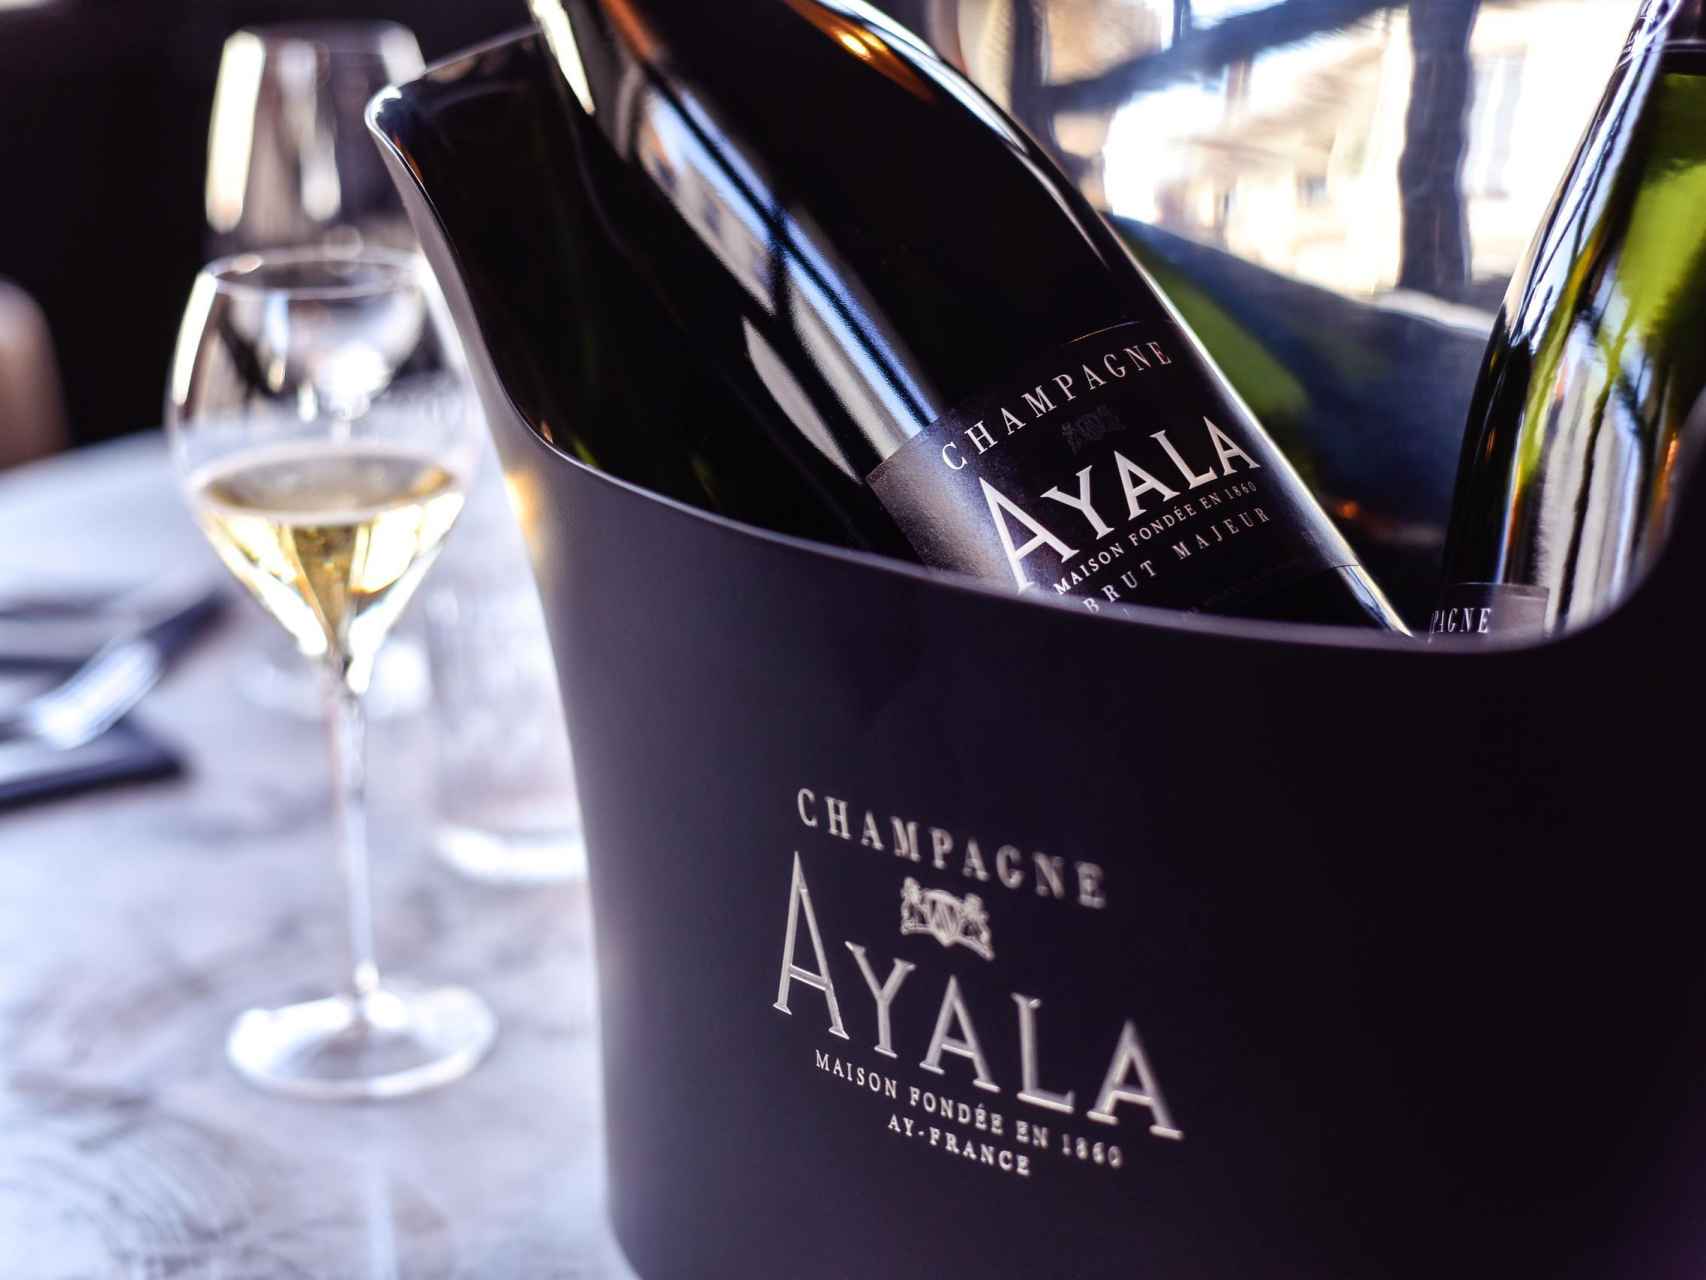 Champagne Ayala.